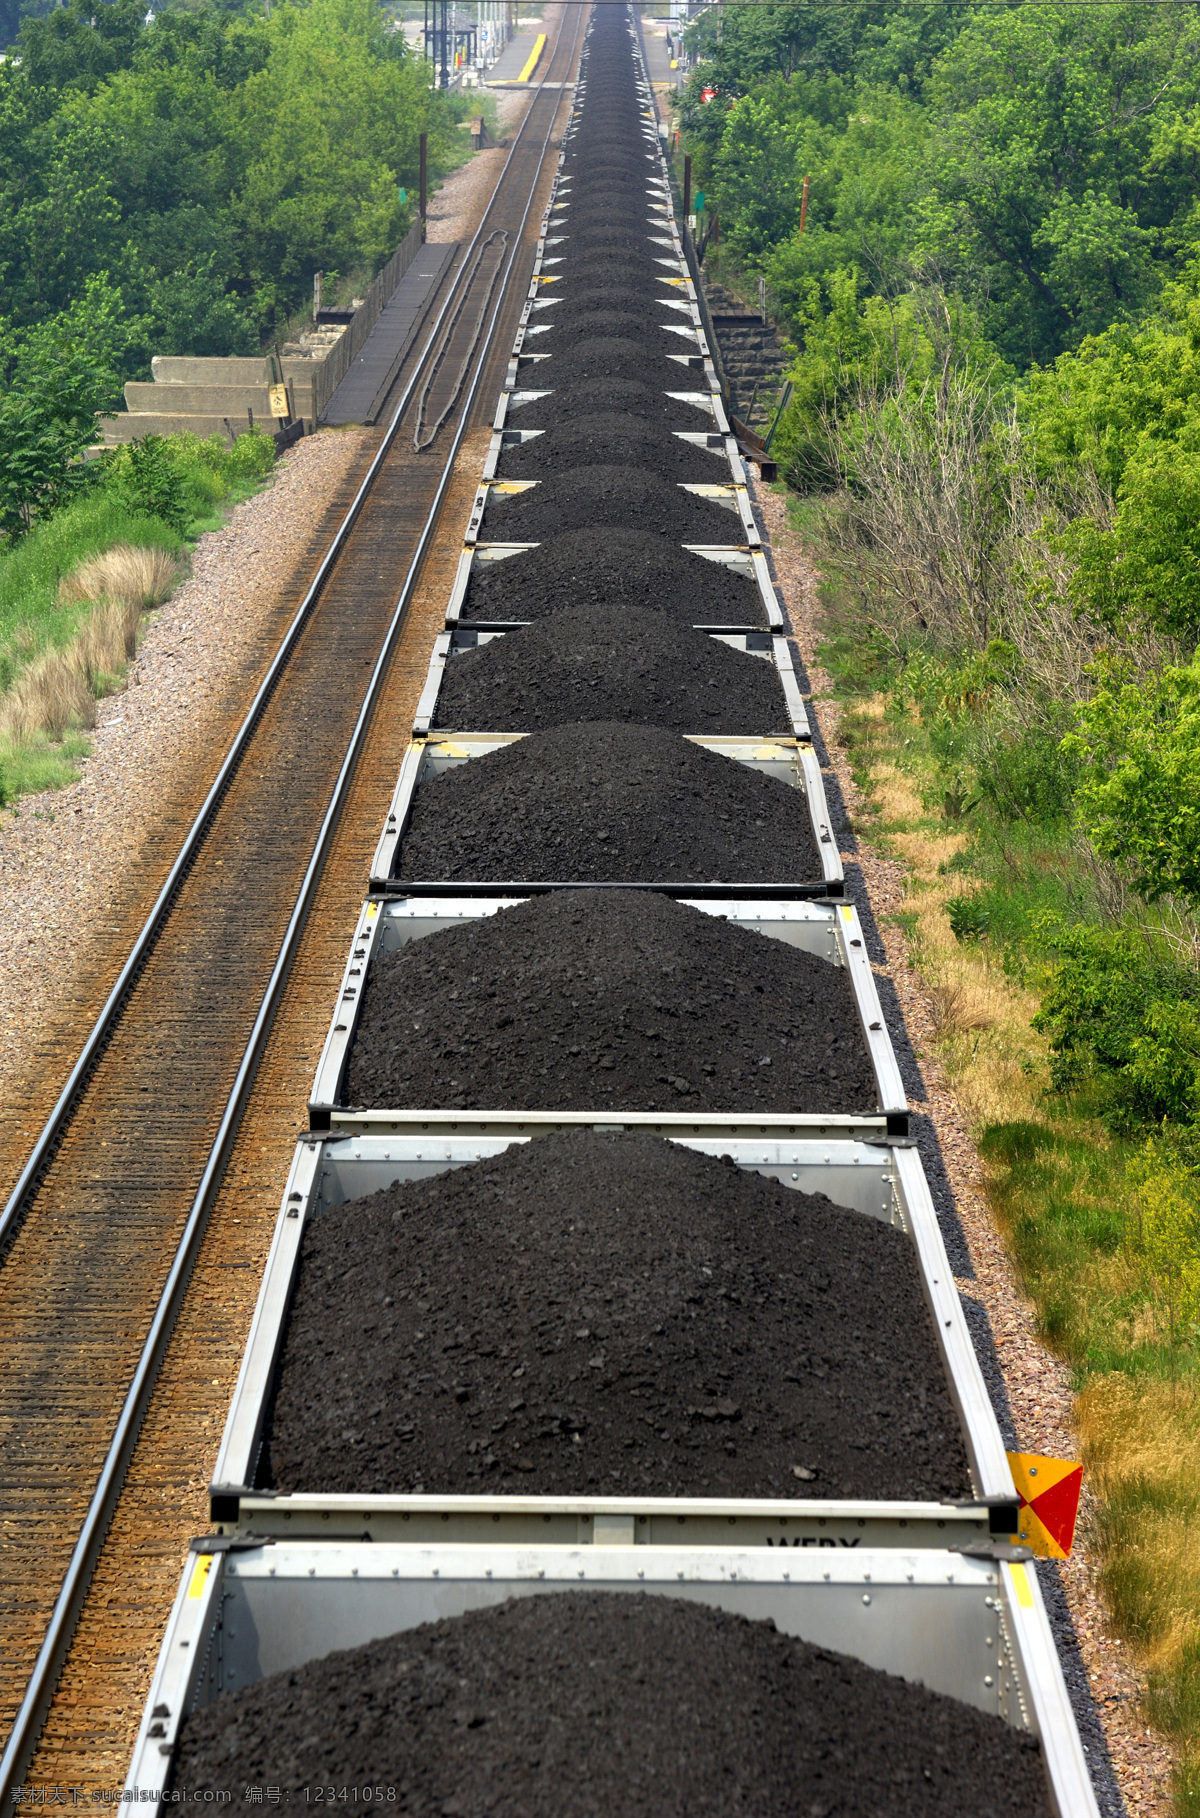 装 煤 火车 采煤 煤炭 煤矿 矿石 原煤 煤炭工业 煤炭运输车 工业生产 现代科技